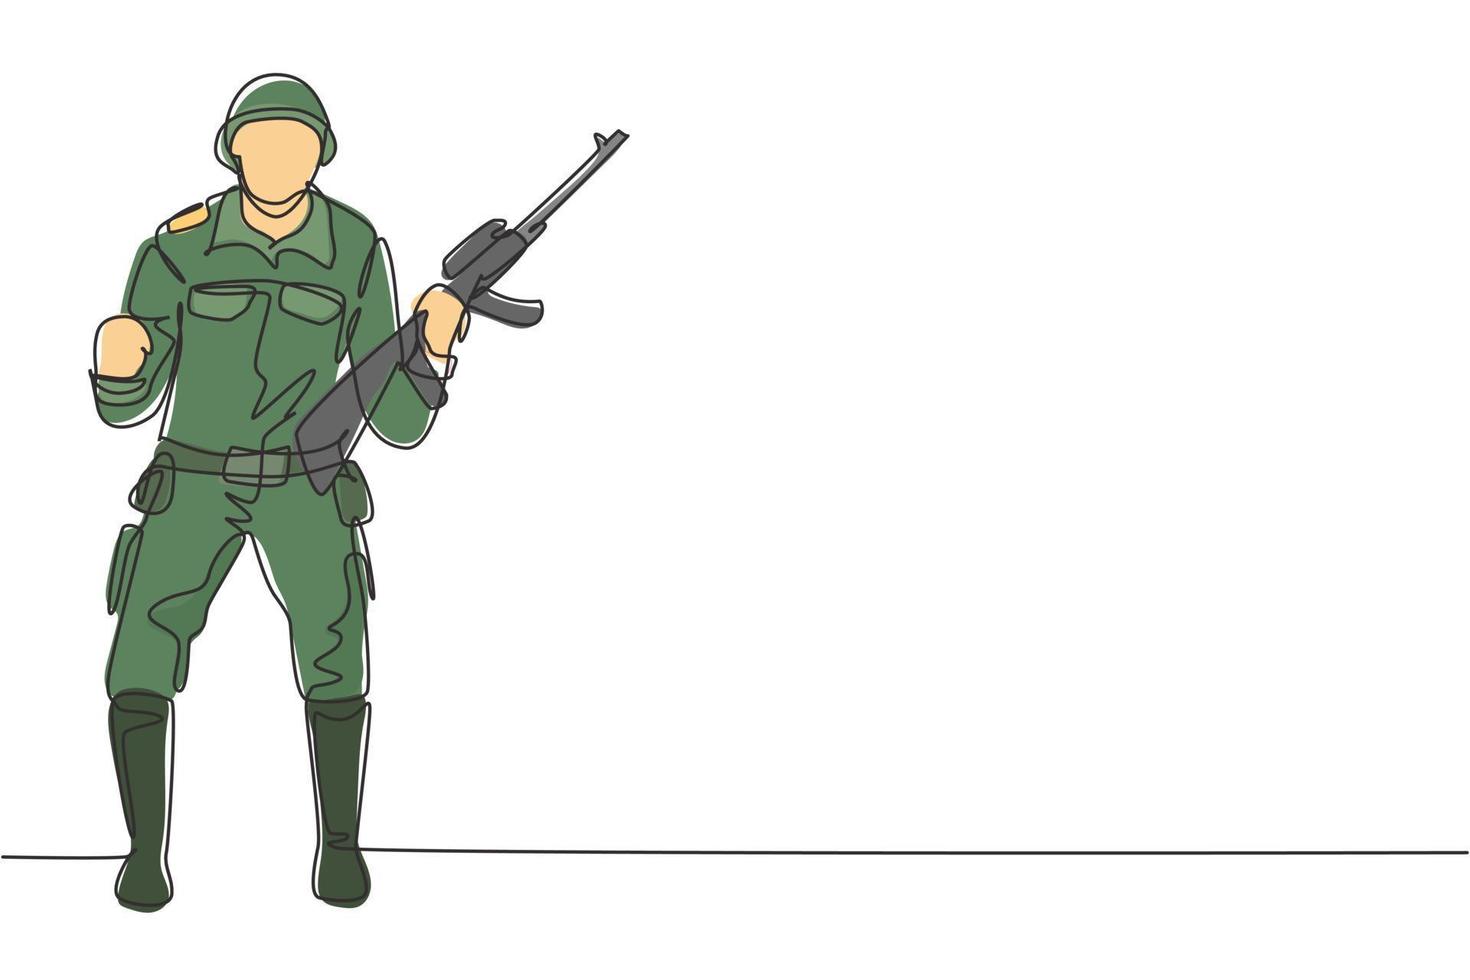 il soldato con un disegno a linea continua si leva in piedi con l'arma, l'uniforme completa e celebra il gesto servendo il paese con la forza delle forze militari. illustrazione grafica vettoriale di disegno di disegno a linea singola